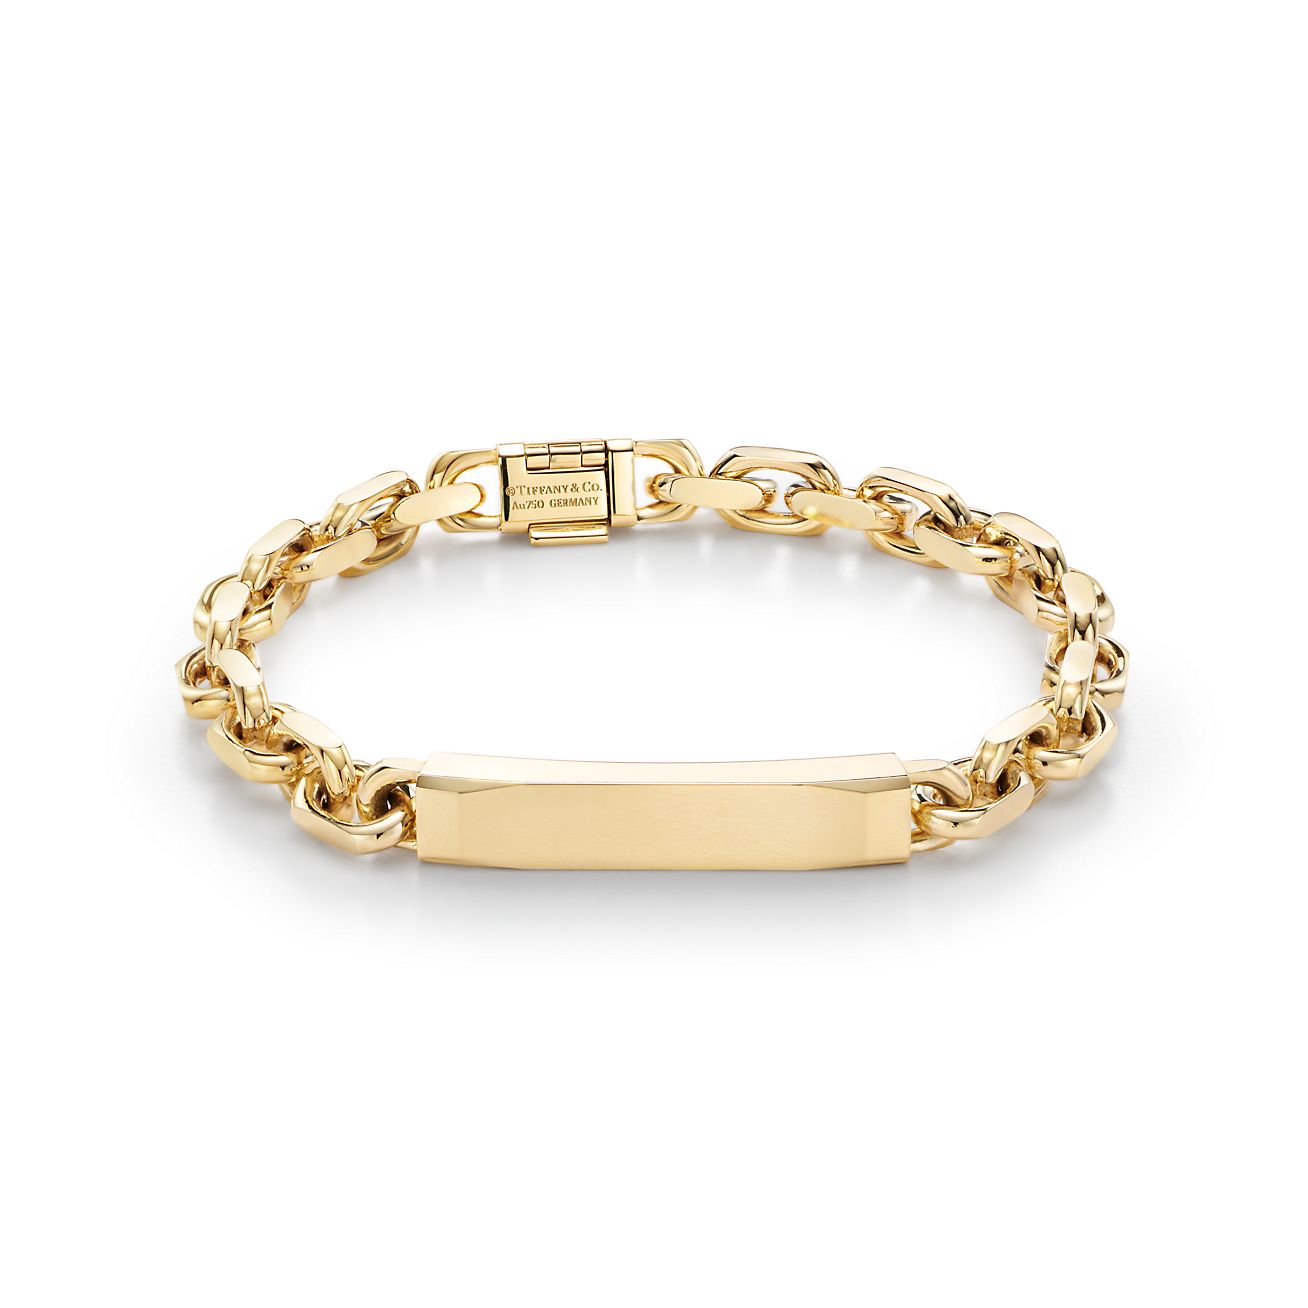 Beck Round Box Chain Bracelet in 18k Gold Vermeil